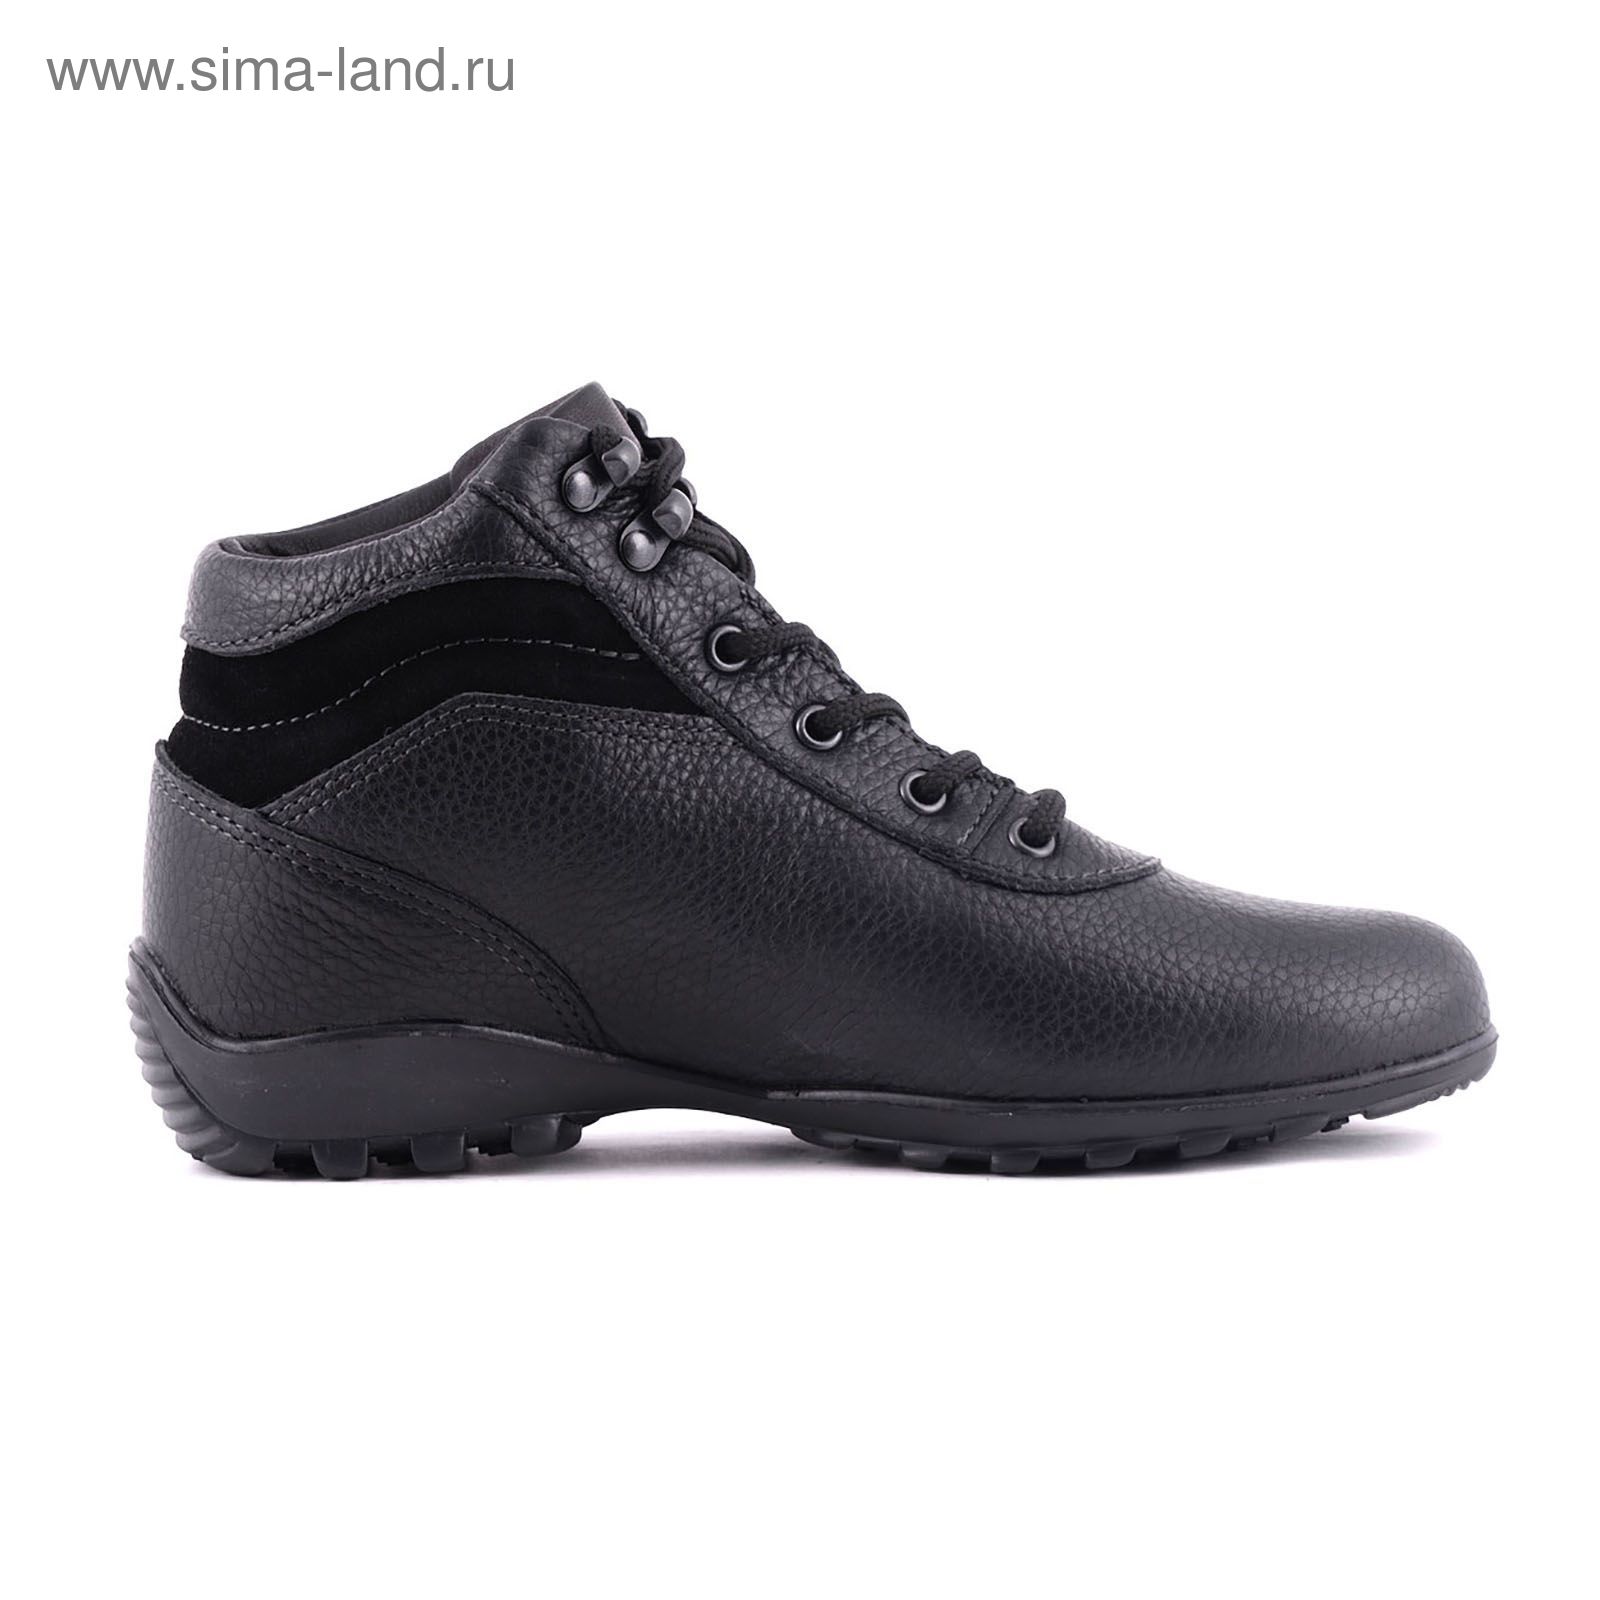 Ботинки TREK Спринт 93-01 капровелюр (черный) (р.36)